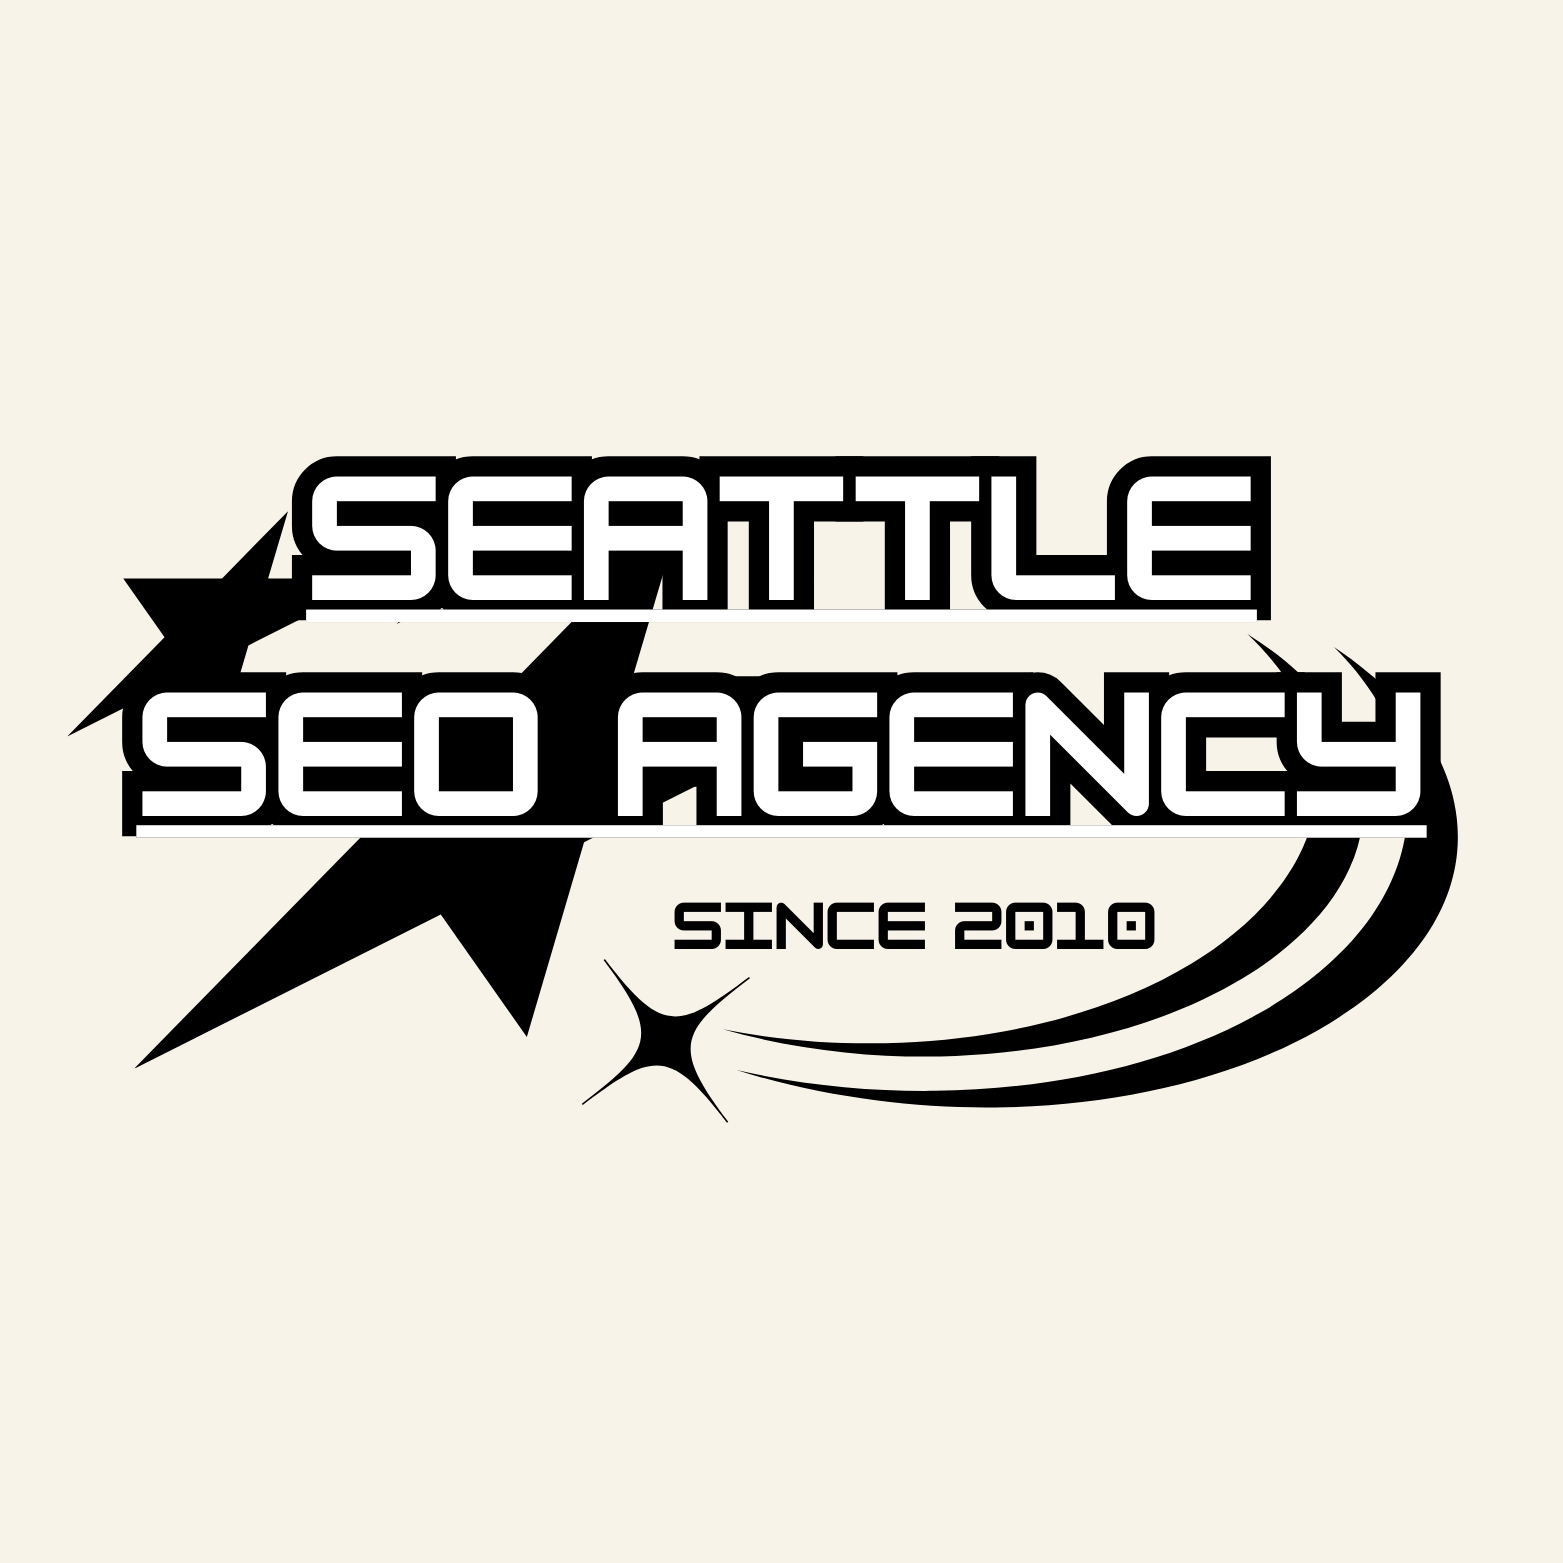 Seattle Digital Marketing Agency